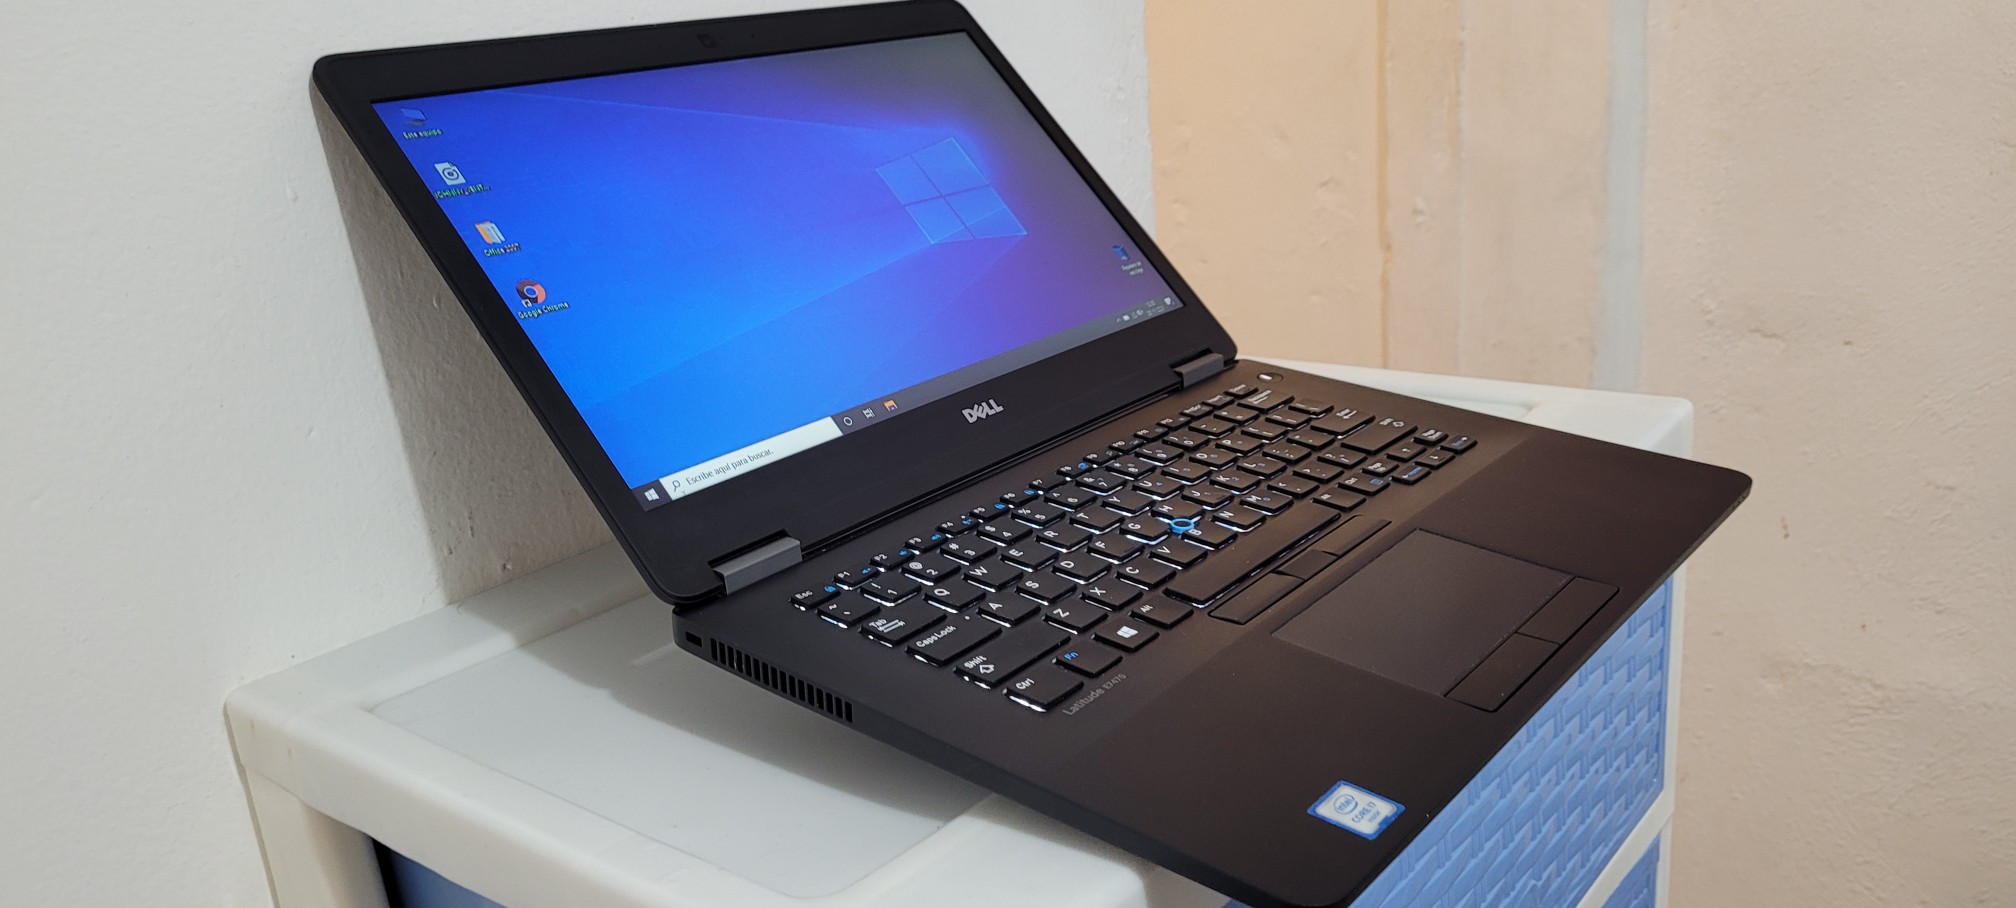 computadoras y laptops - Dell 7470 14 Pulg Core i5 7ma Gen Ram 16gb ddr4 Disco 128gb SSD Video 8gb 1